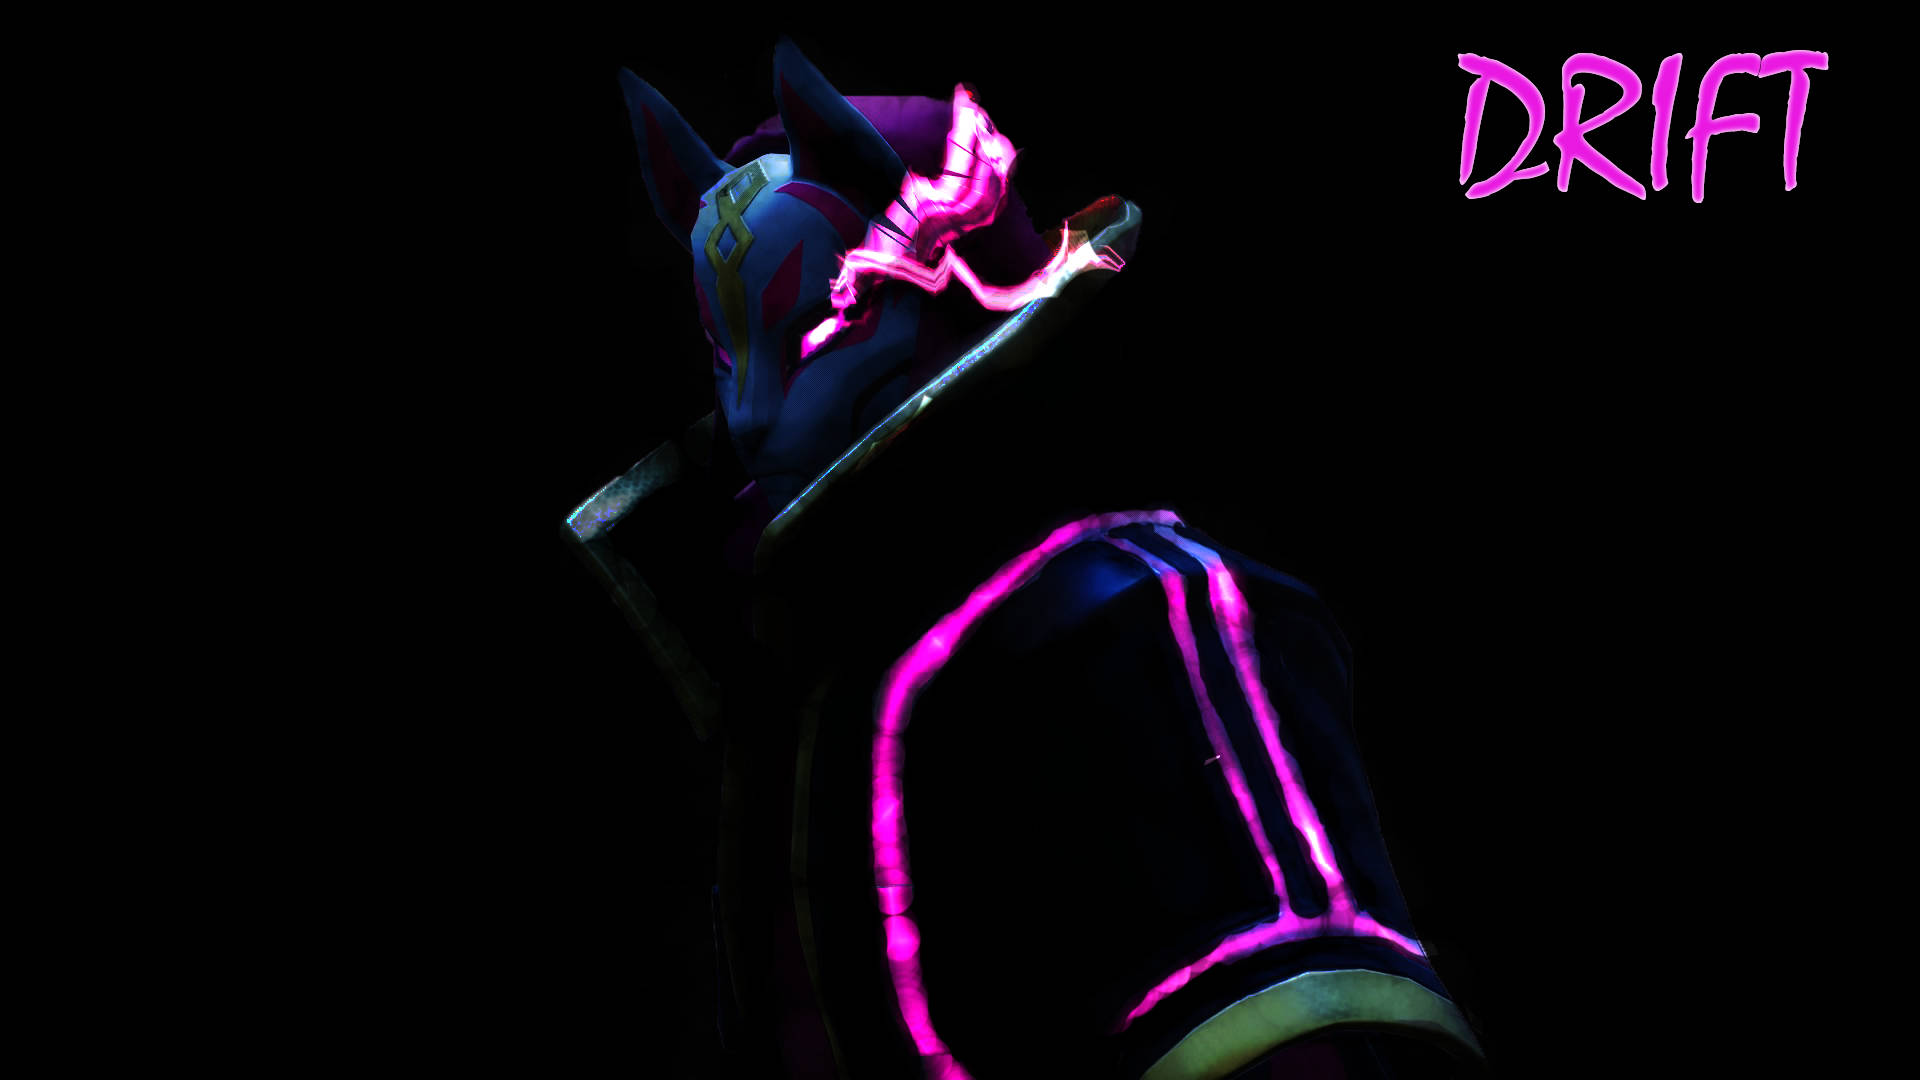 Drift Fortnite Neon Art Background